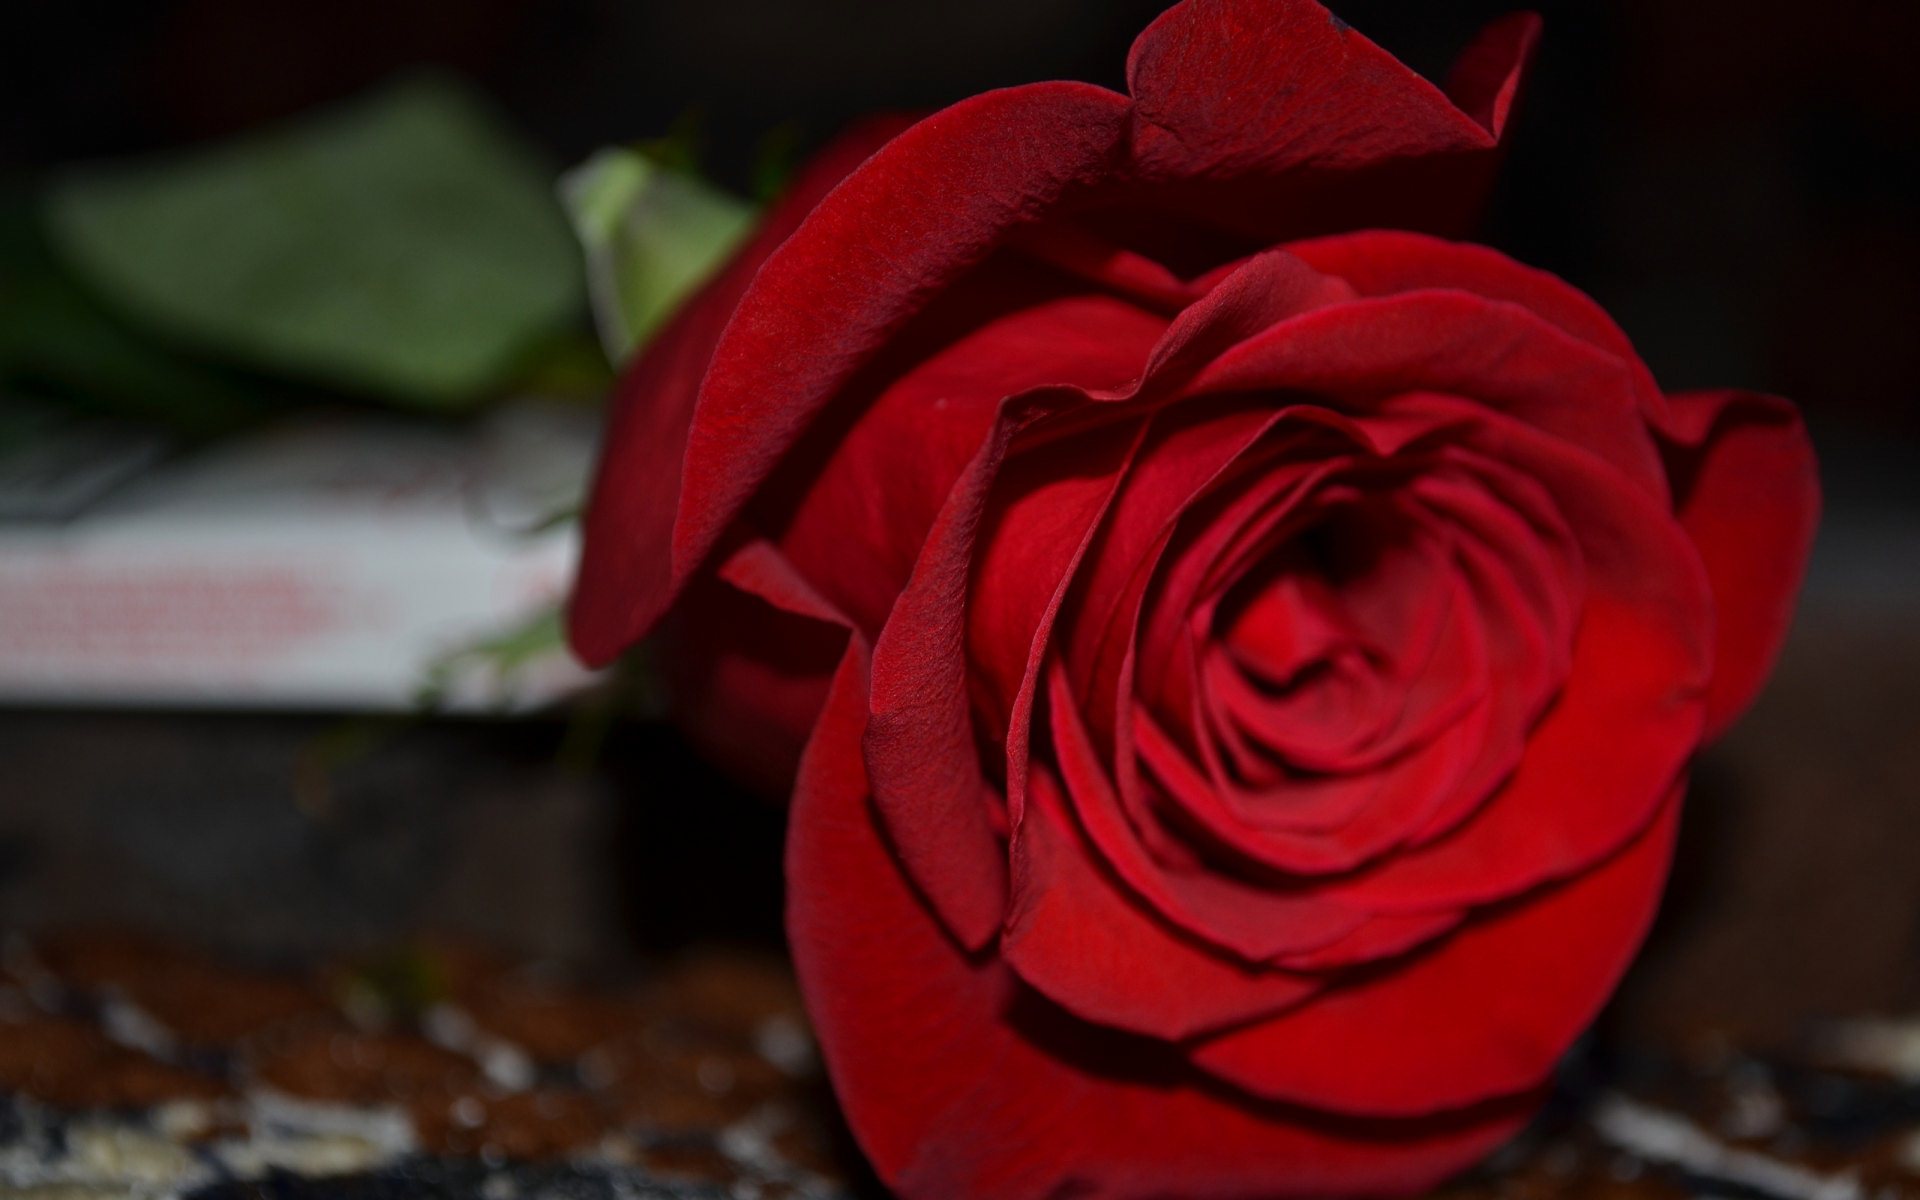  Gambar  Gambar  Bunga  Mawar Merah Keren  Berbagi Ilmu